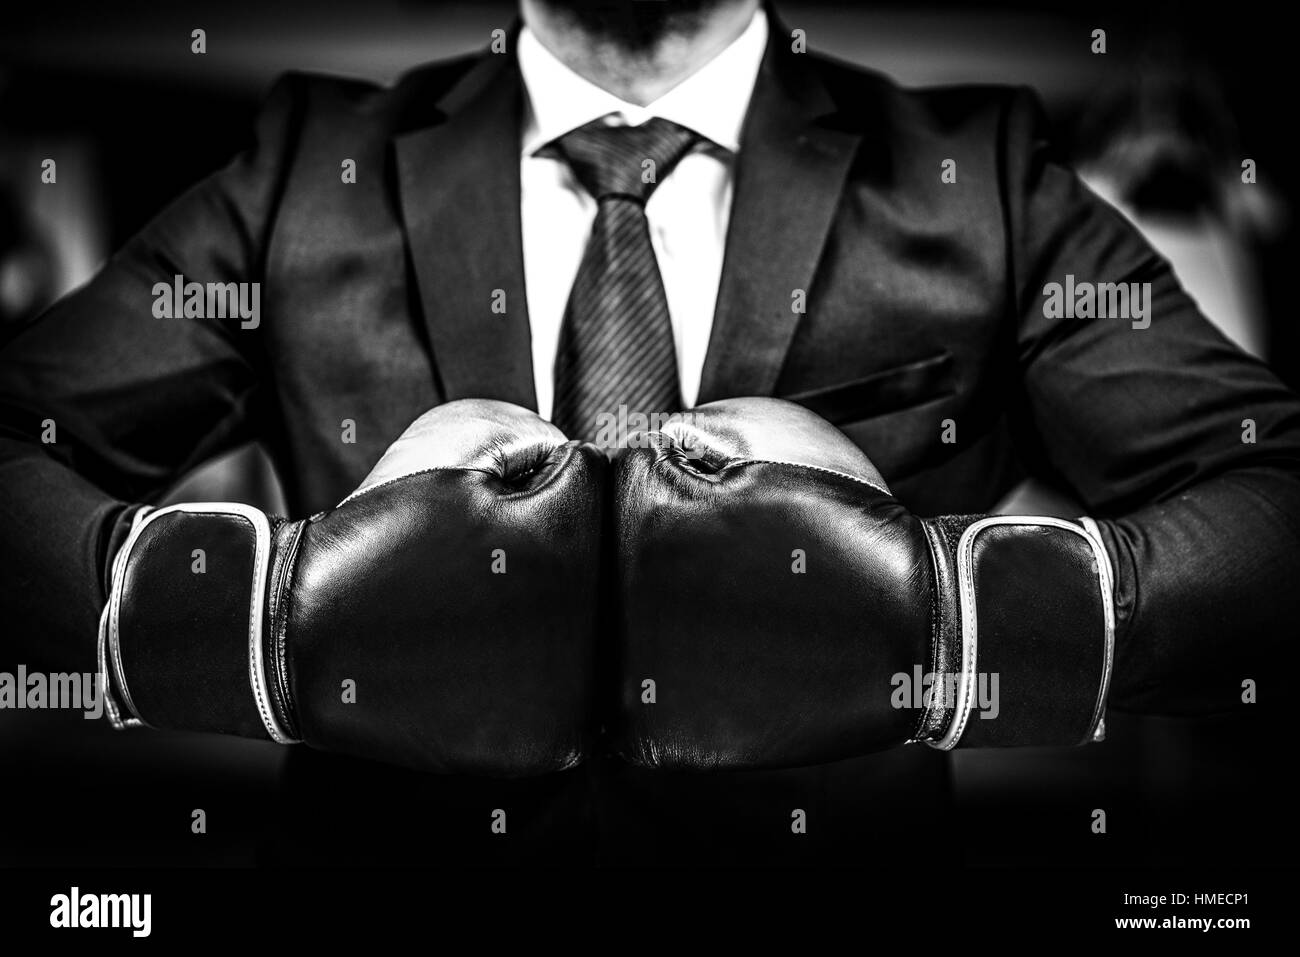 Businessman avec des gants de boxe est prêt pour la bataille. L'homme en costume, chemise et cravate gants de combat est maintenant ensemble. Tourné dans un club de boxe, co Banque D'Images